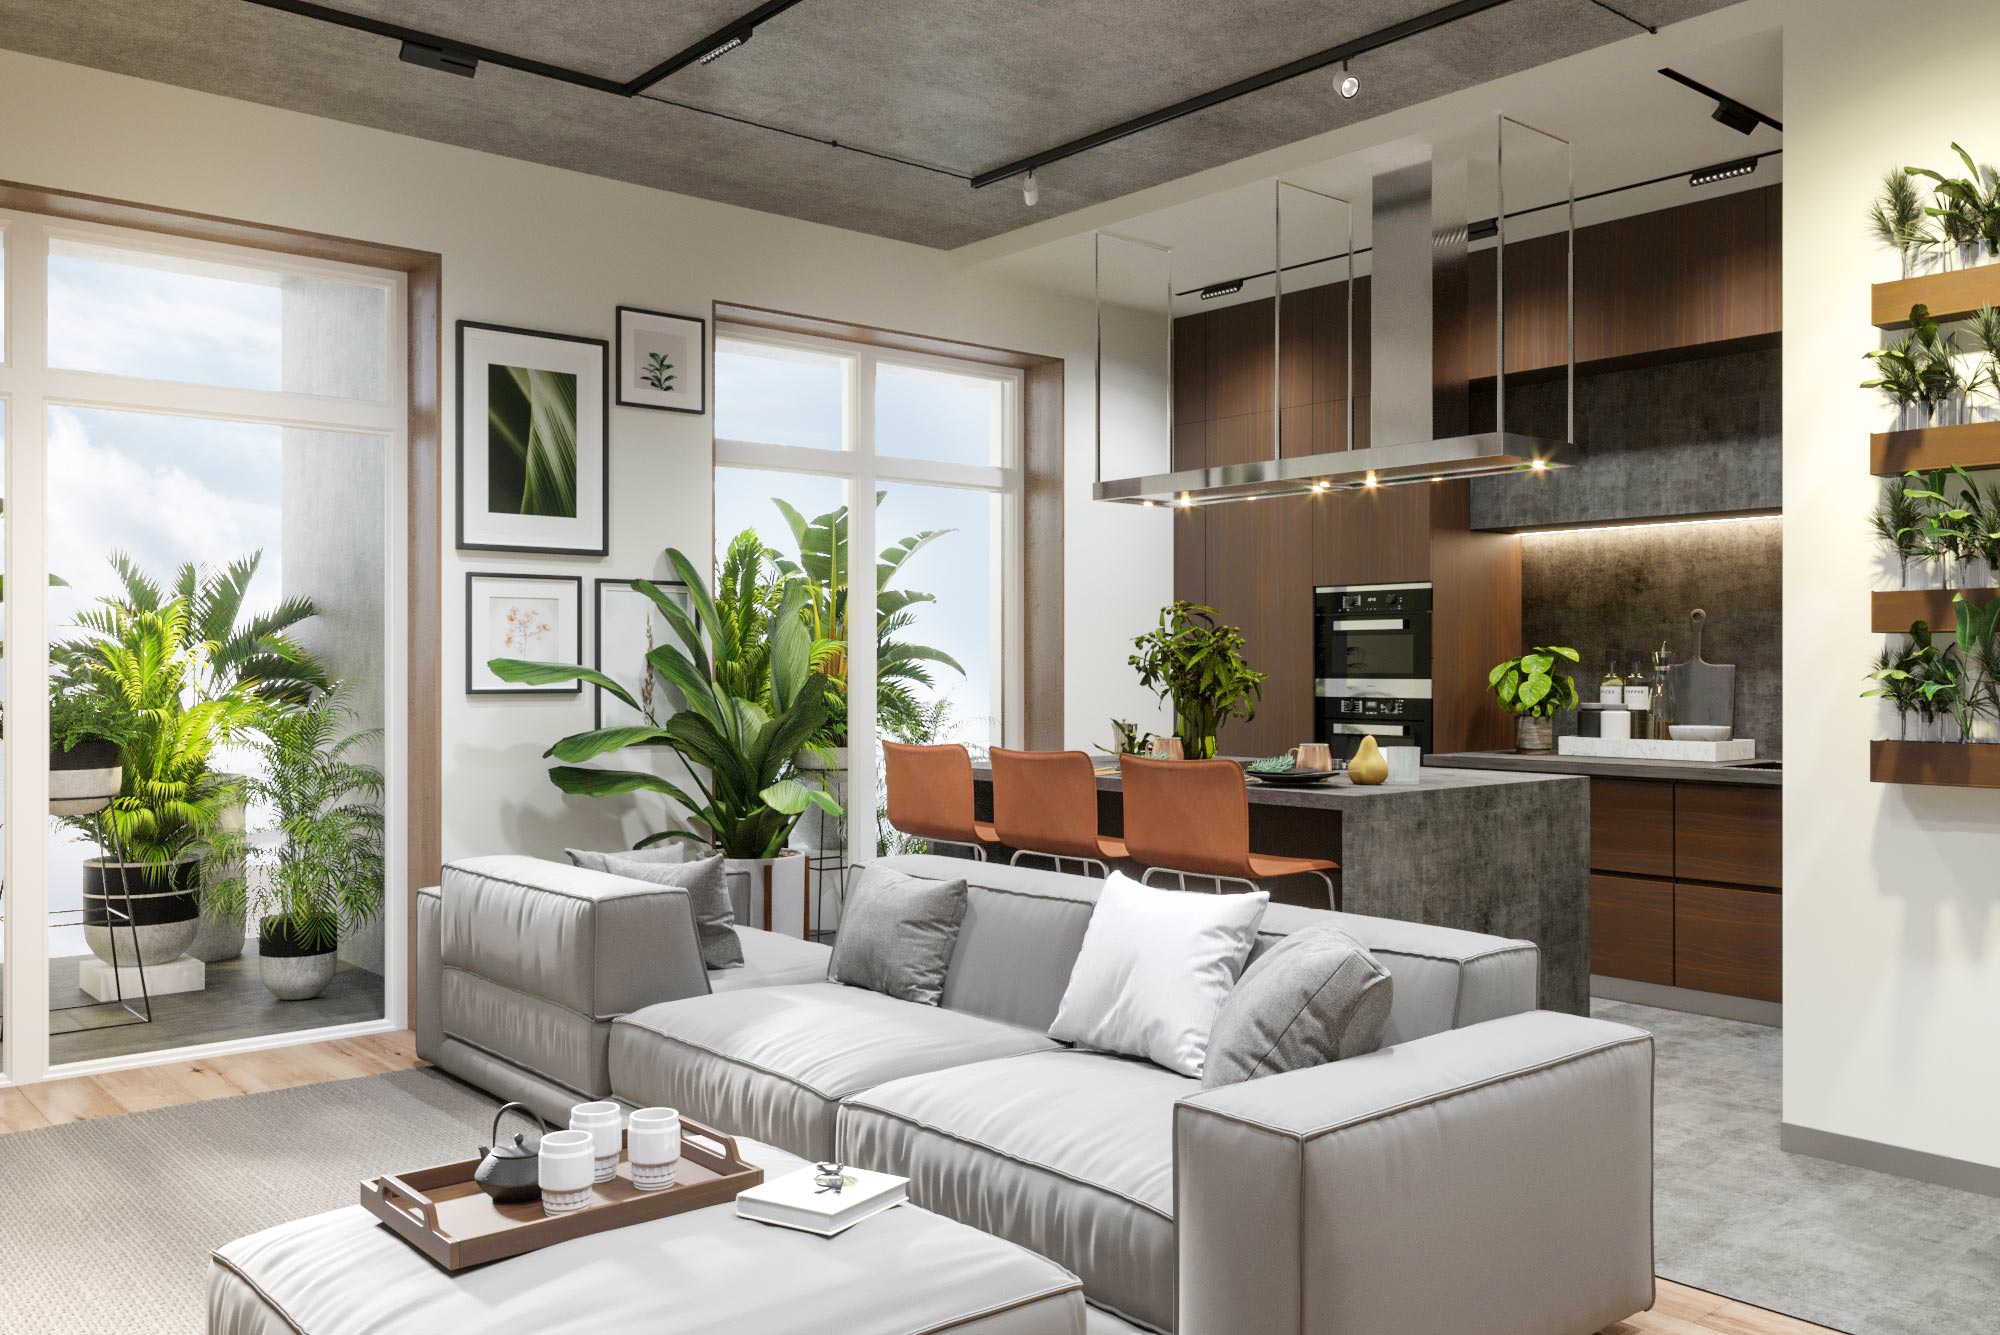 Студия, Общий вид гостиной и кухни с обзором на кухню, Дизайн интерьера в ЖК Макаровский 2020г.